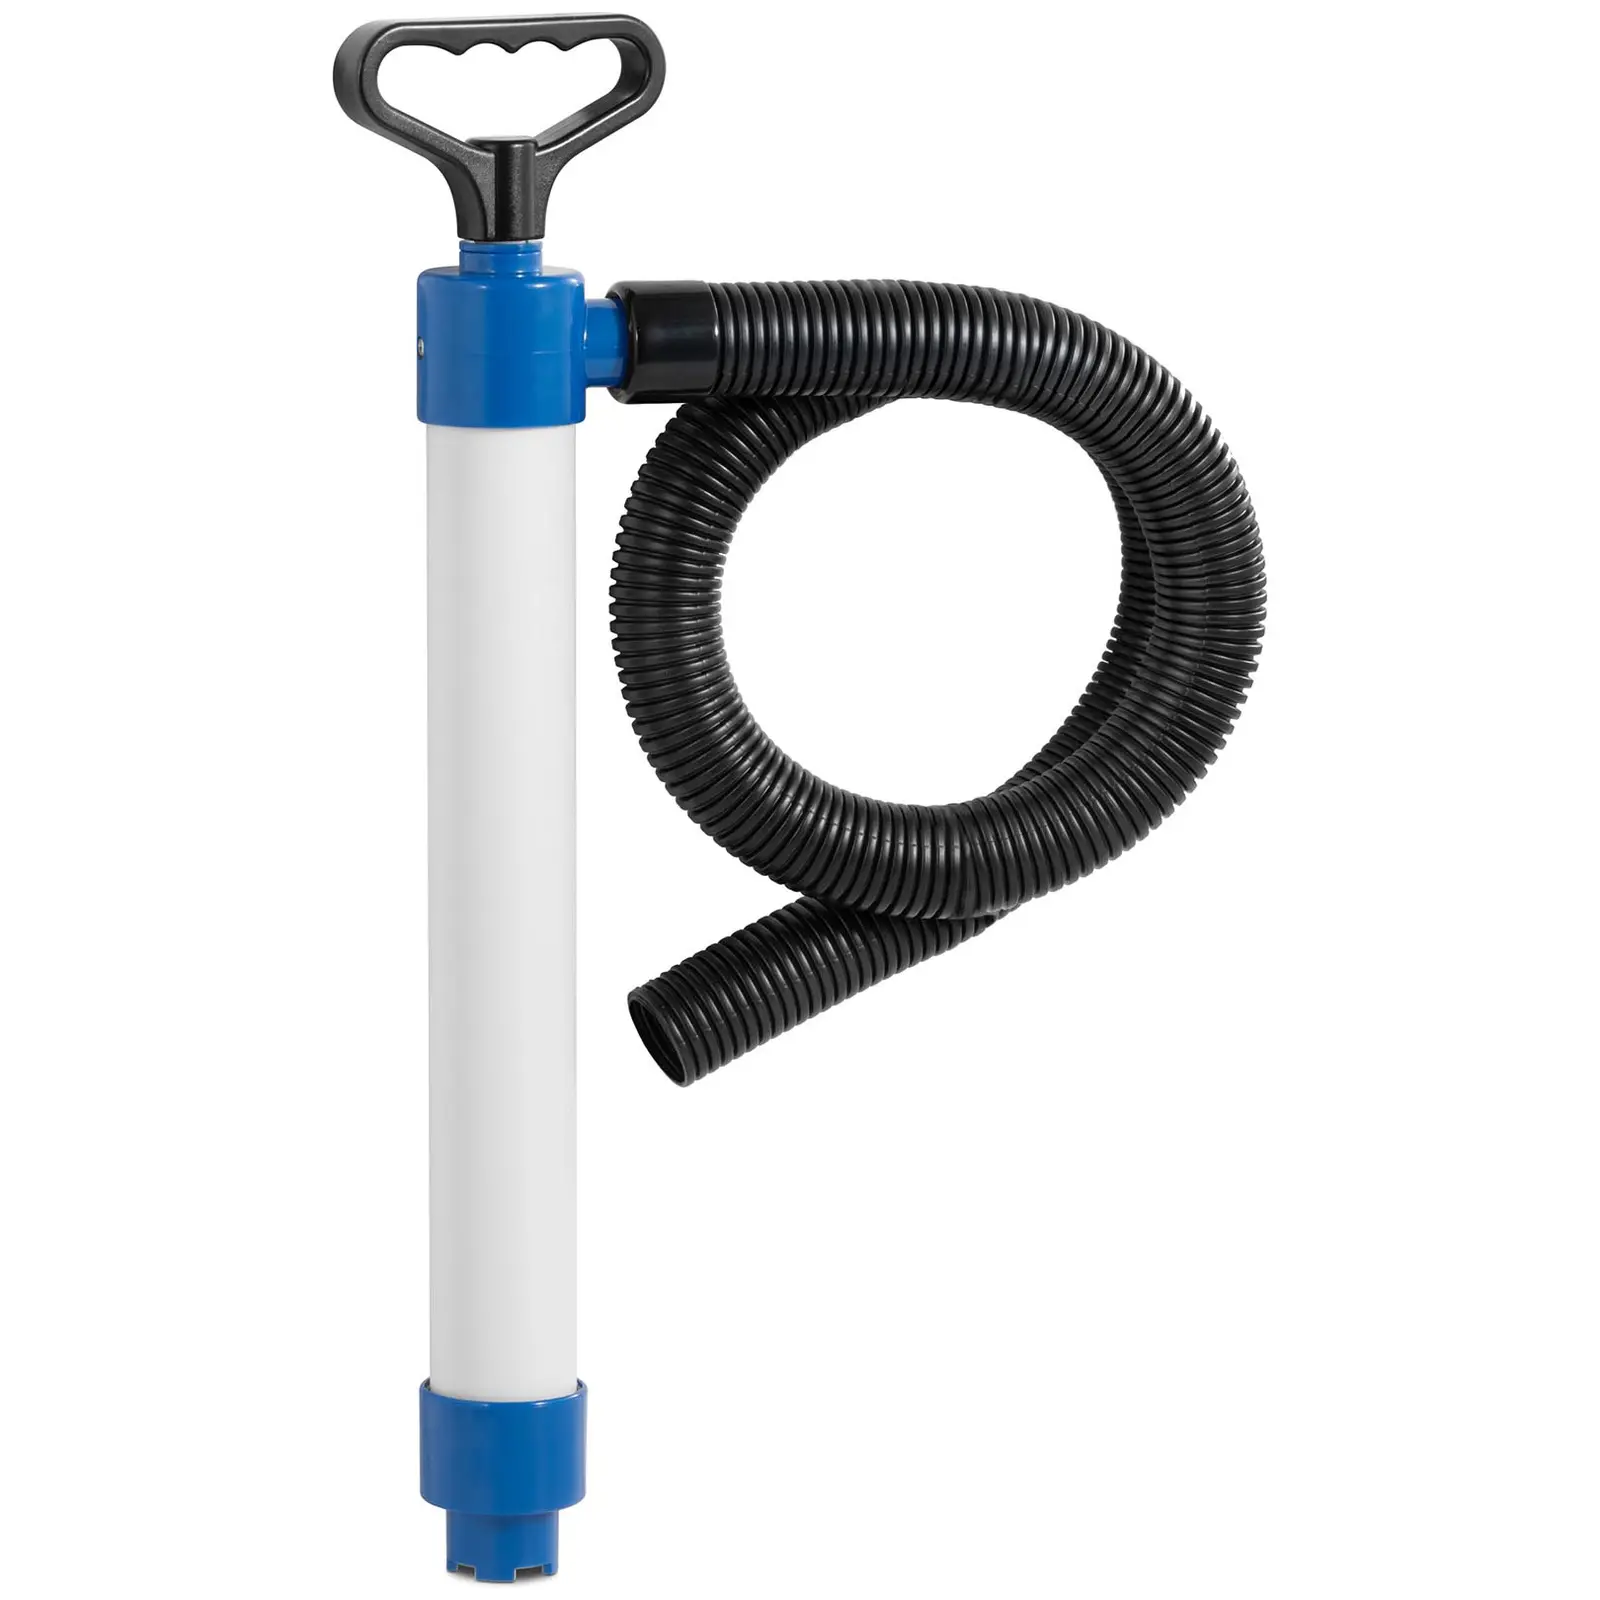 Handwasserpumpe Lenzpumpe - 0,5 m Förderhöhe - 45 l/min Durchflussmenge - inkl. Schlauch